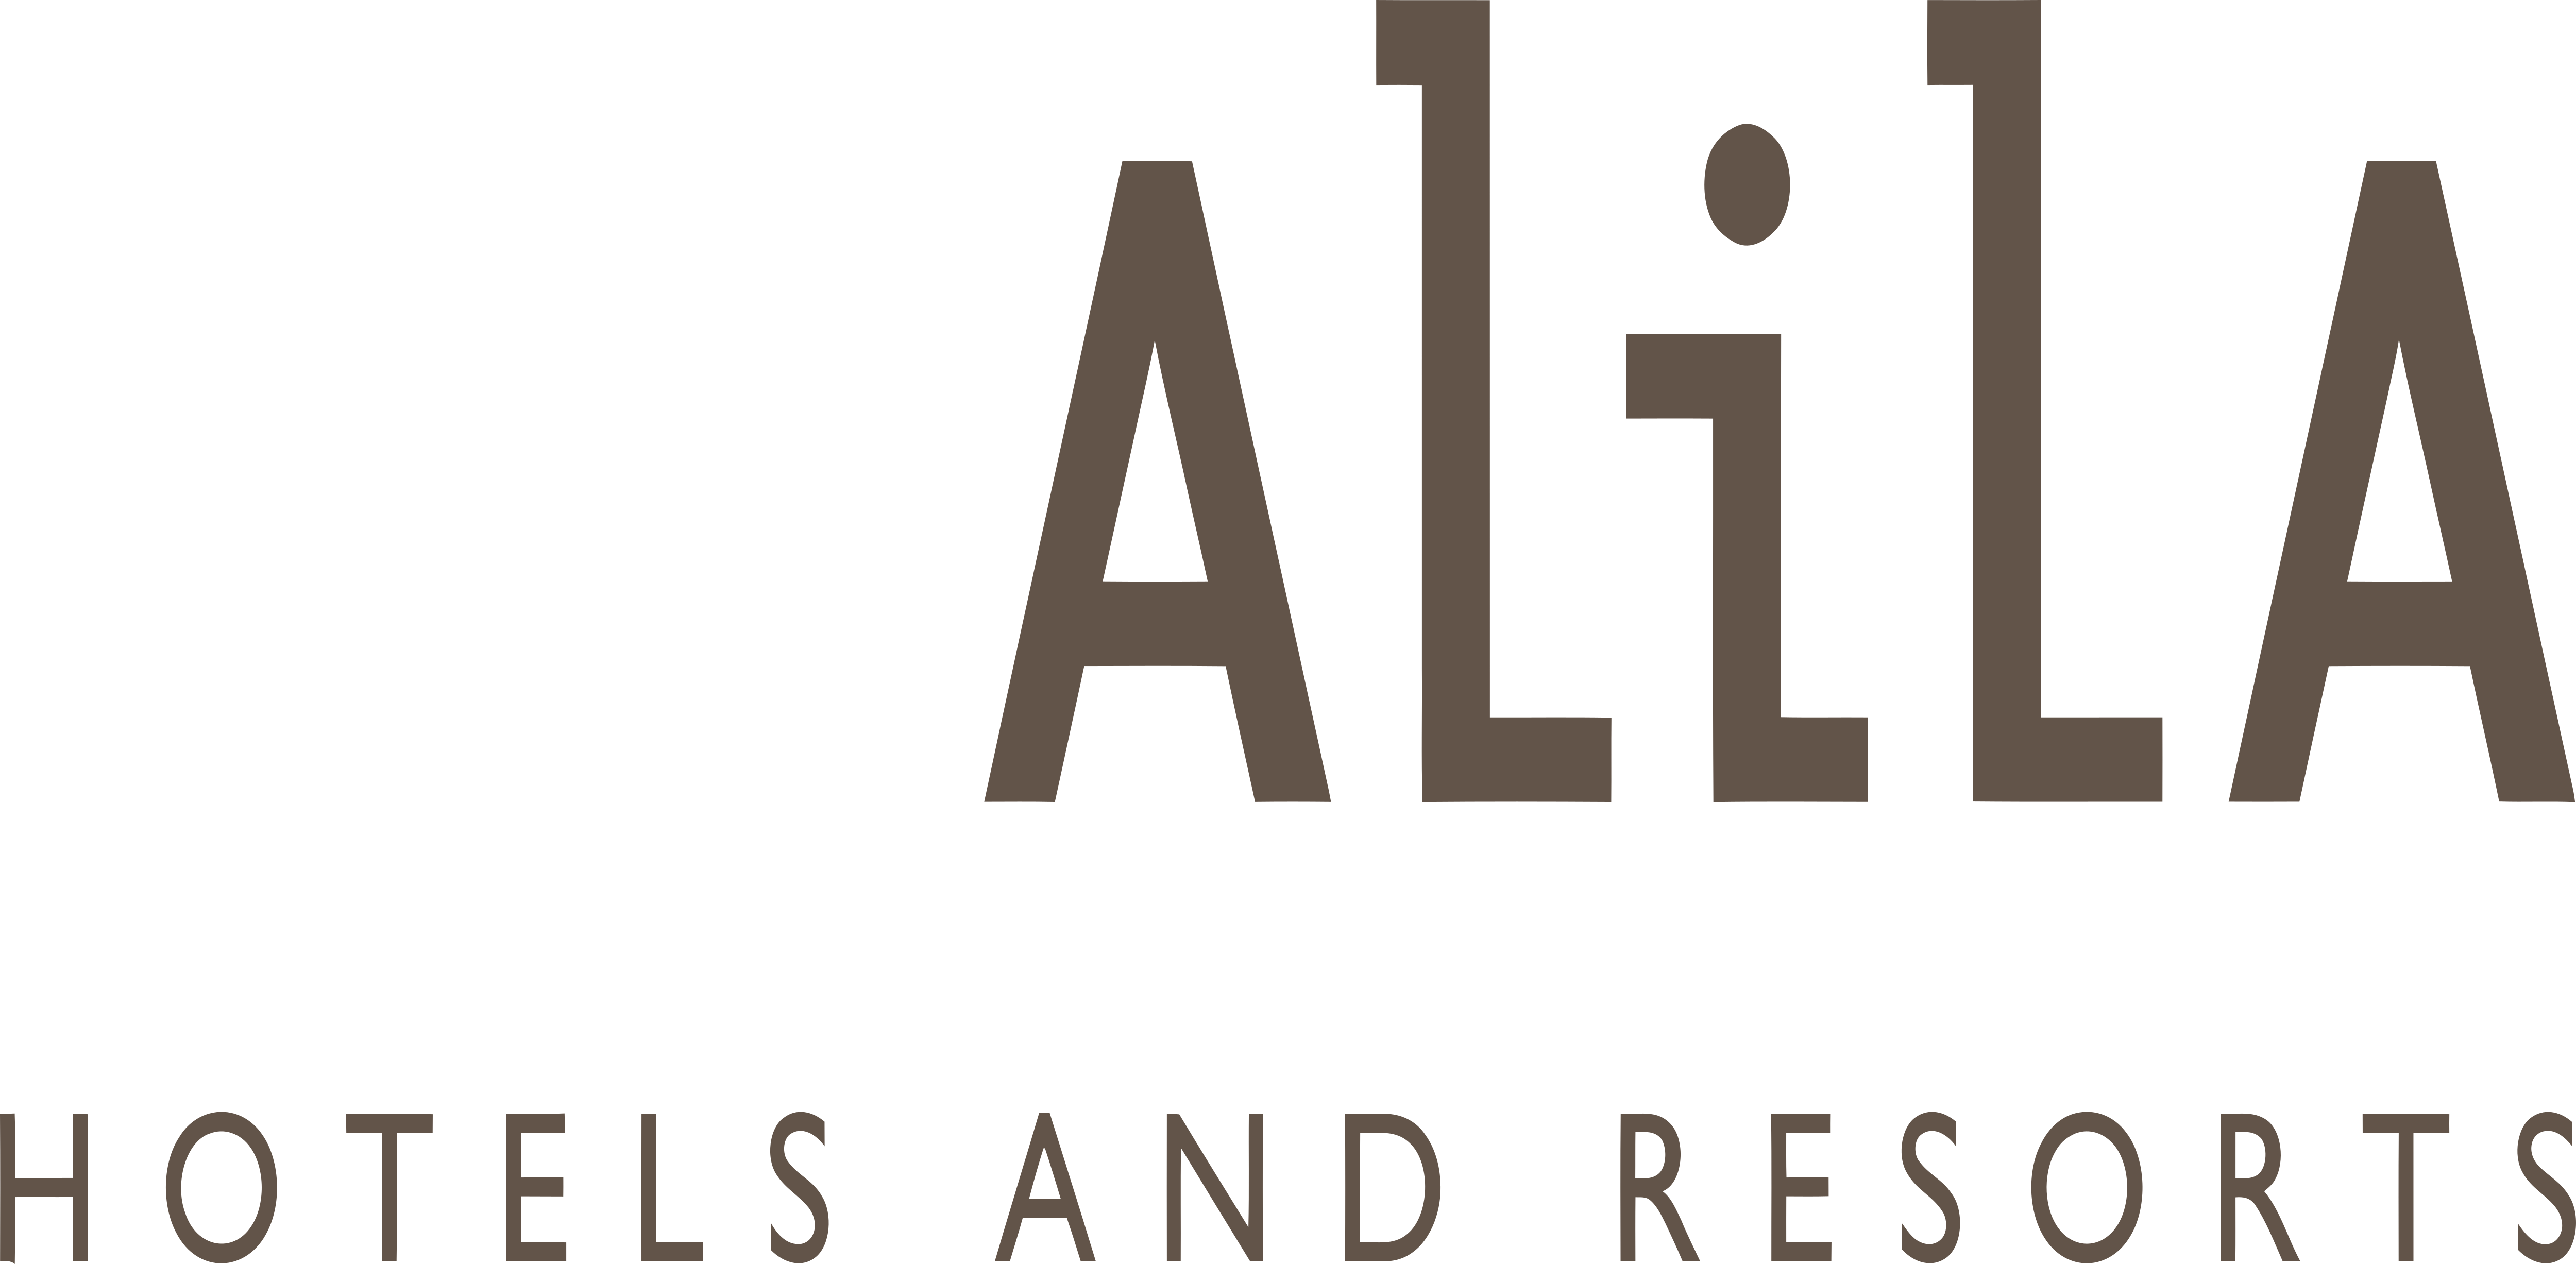  Alila  Hotels  and Resorts  Logos  Download